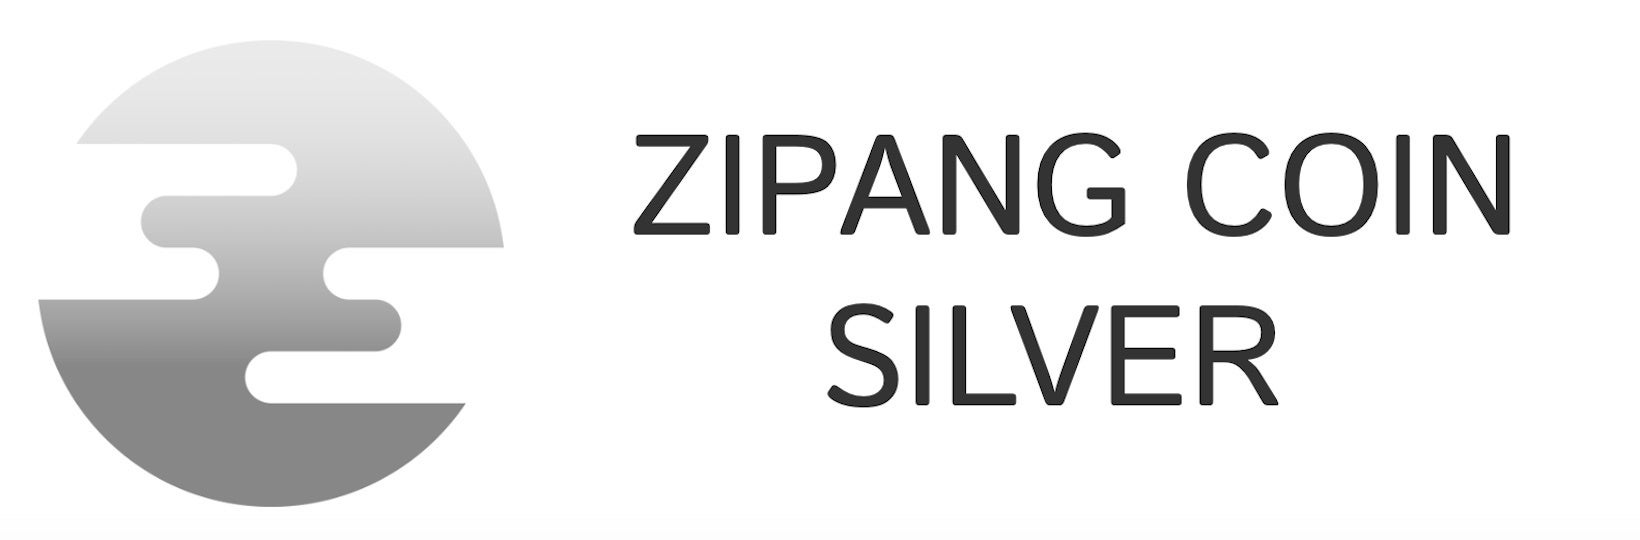 「ジパングコインシルバー(ZPGAG)」および「ジパングコインプラチナ(ZPGPT)」の取扱予定のお知らせ